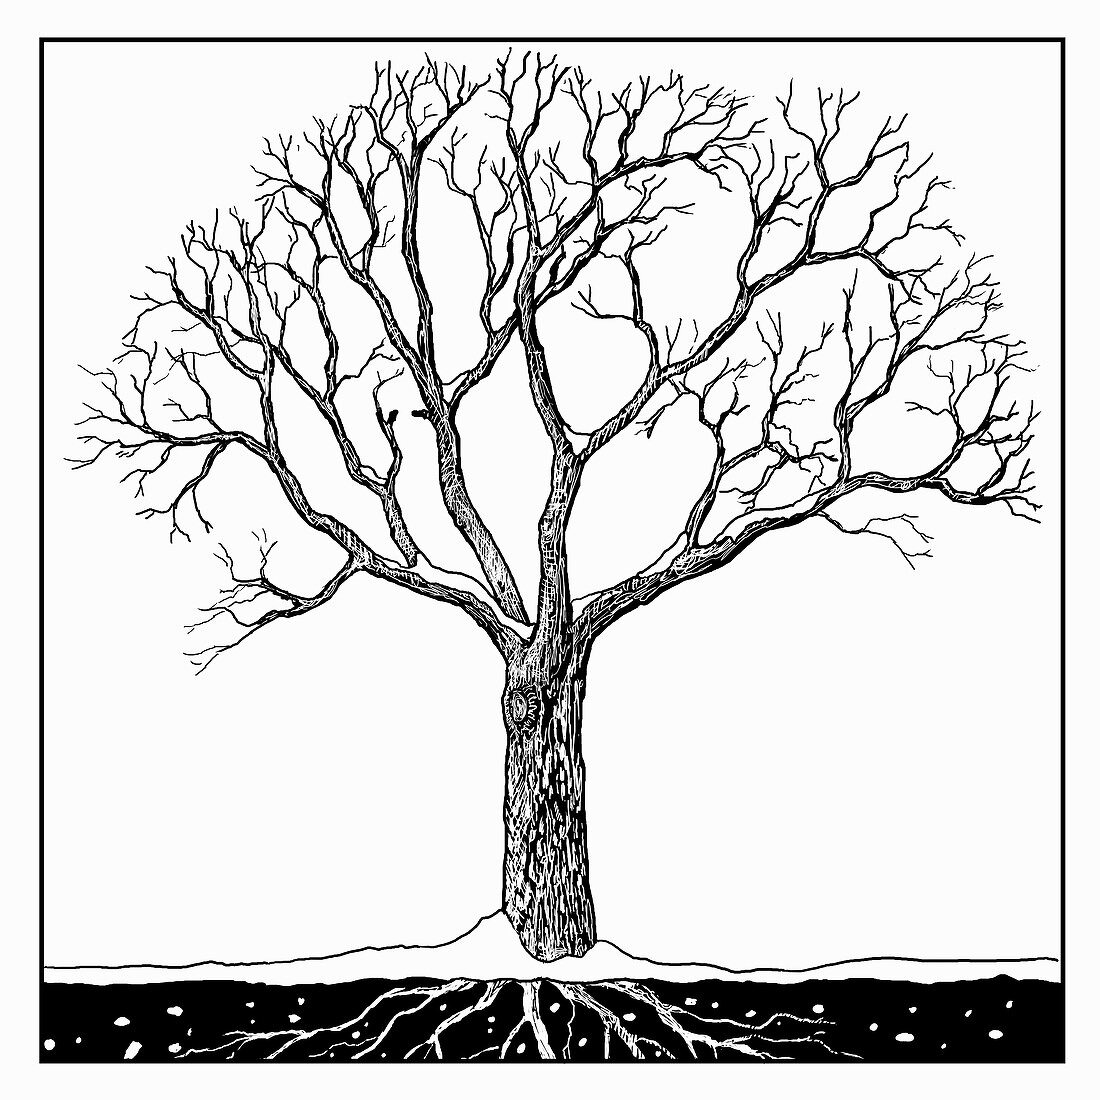 Tree in winter, illustration